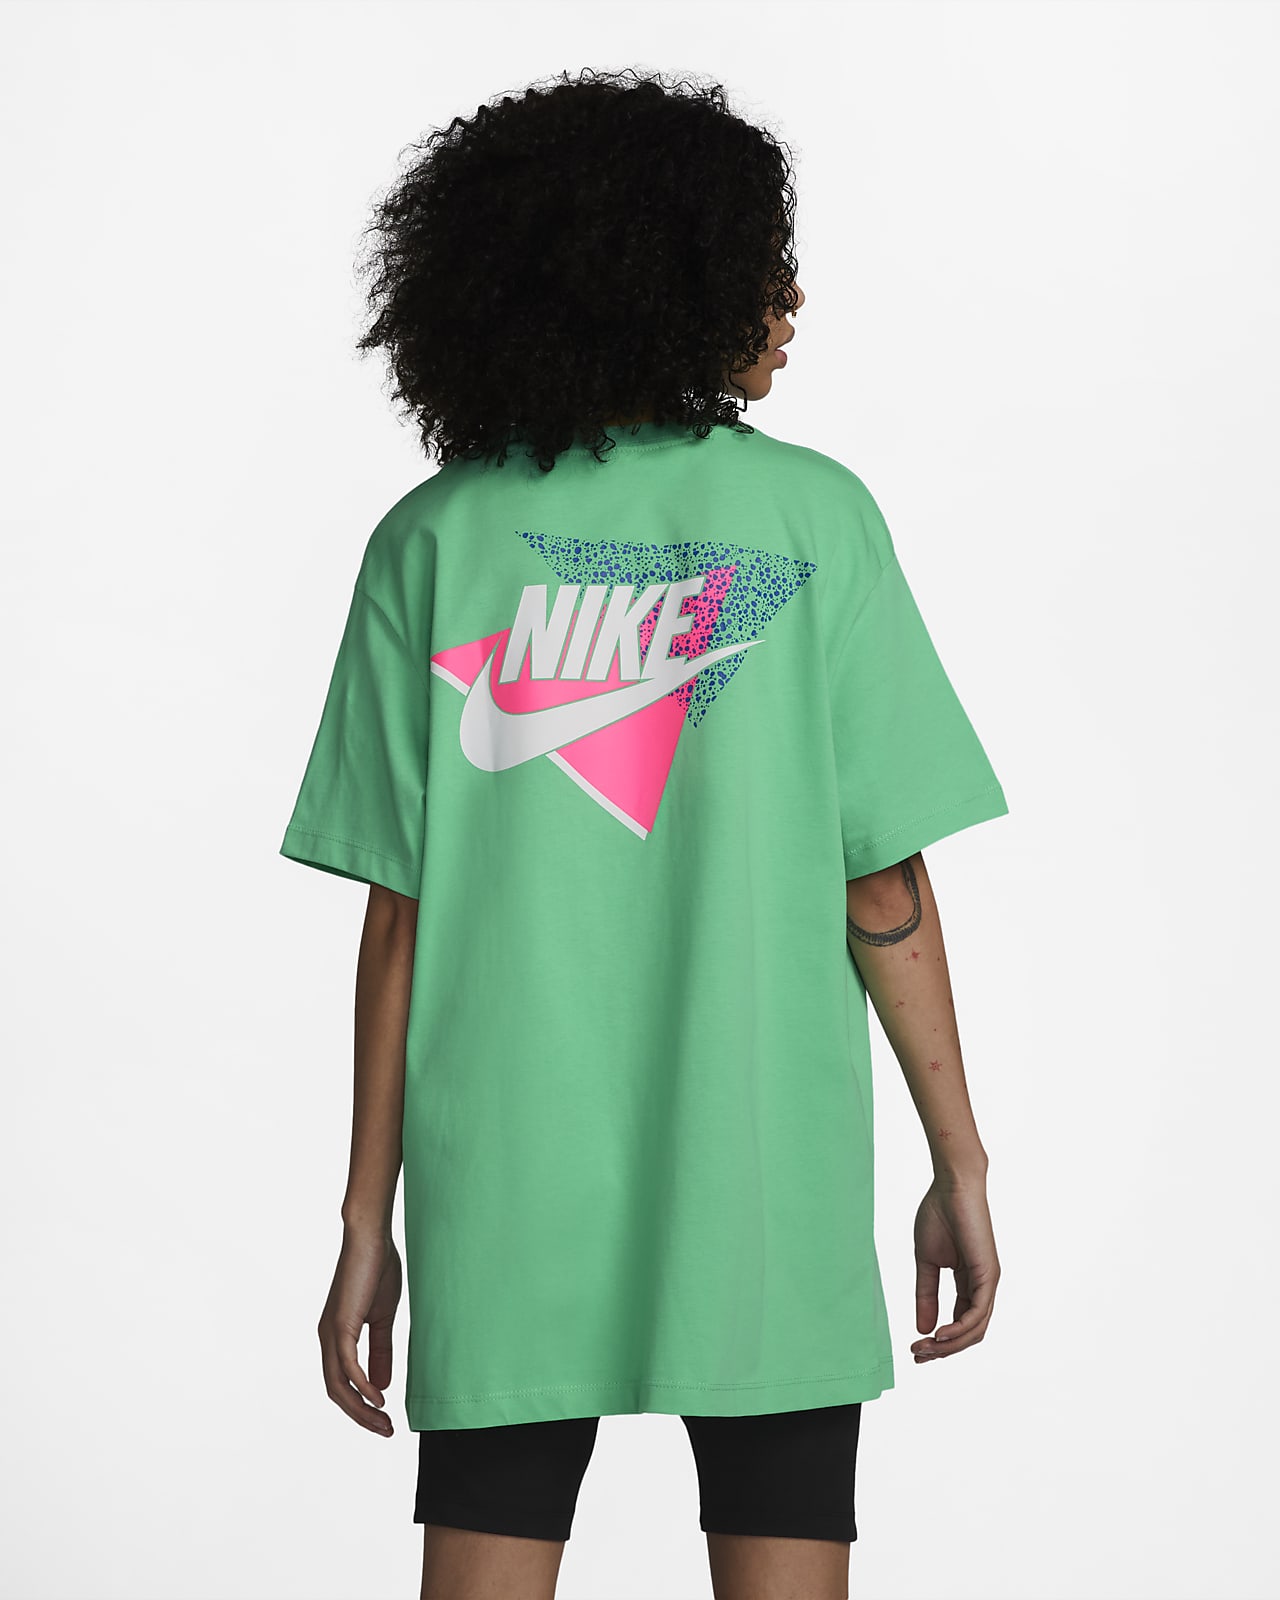 T-shirt Femme Nike Swoosh Printemps